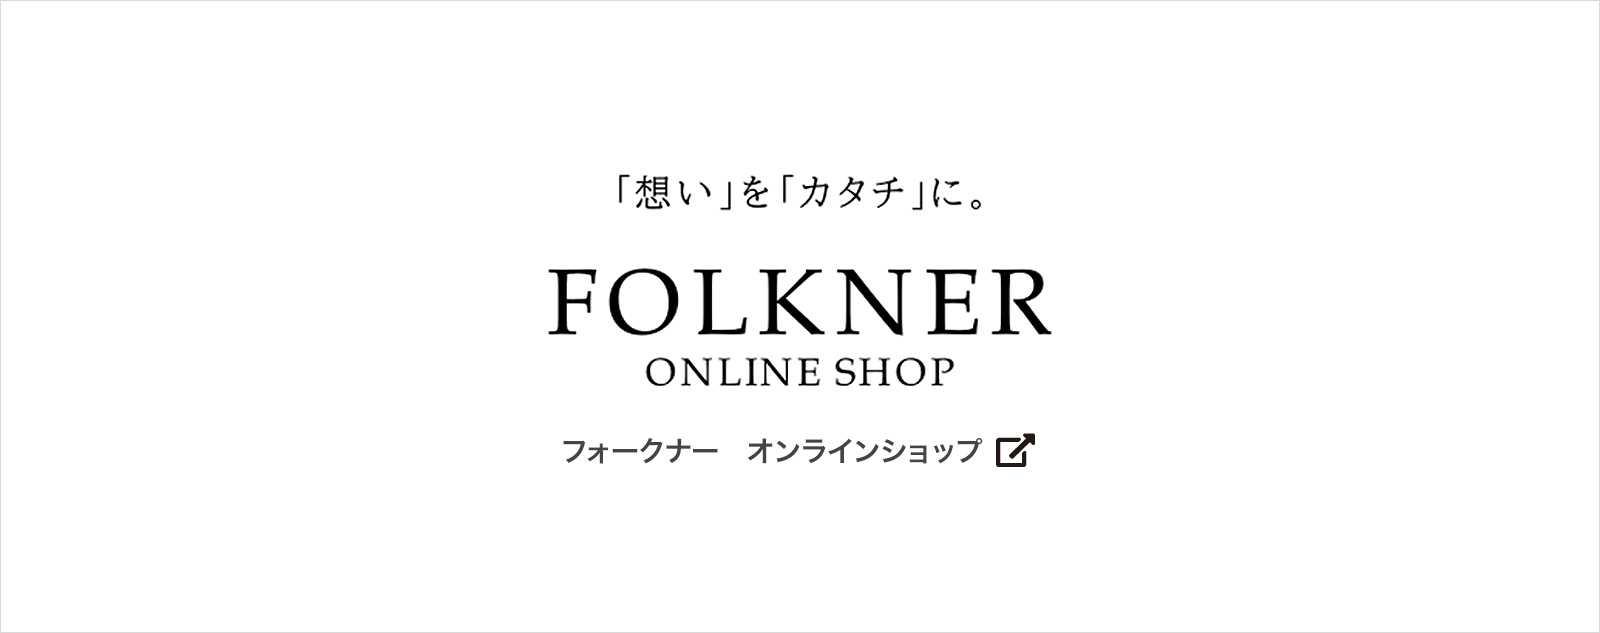 【公式】 FOLKNER ONLINE SHOP